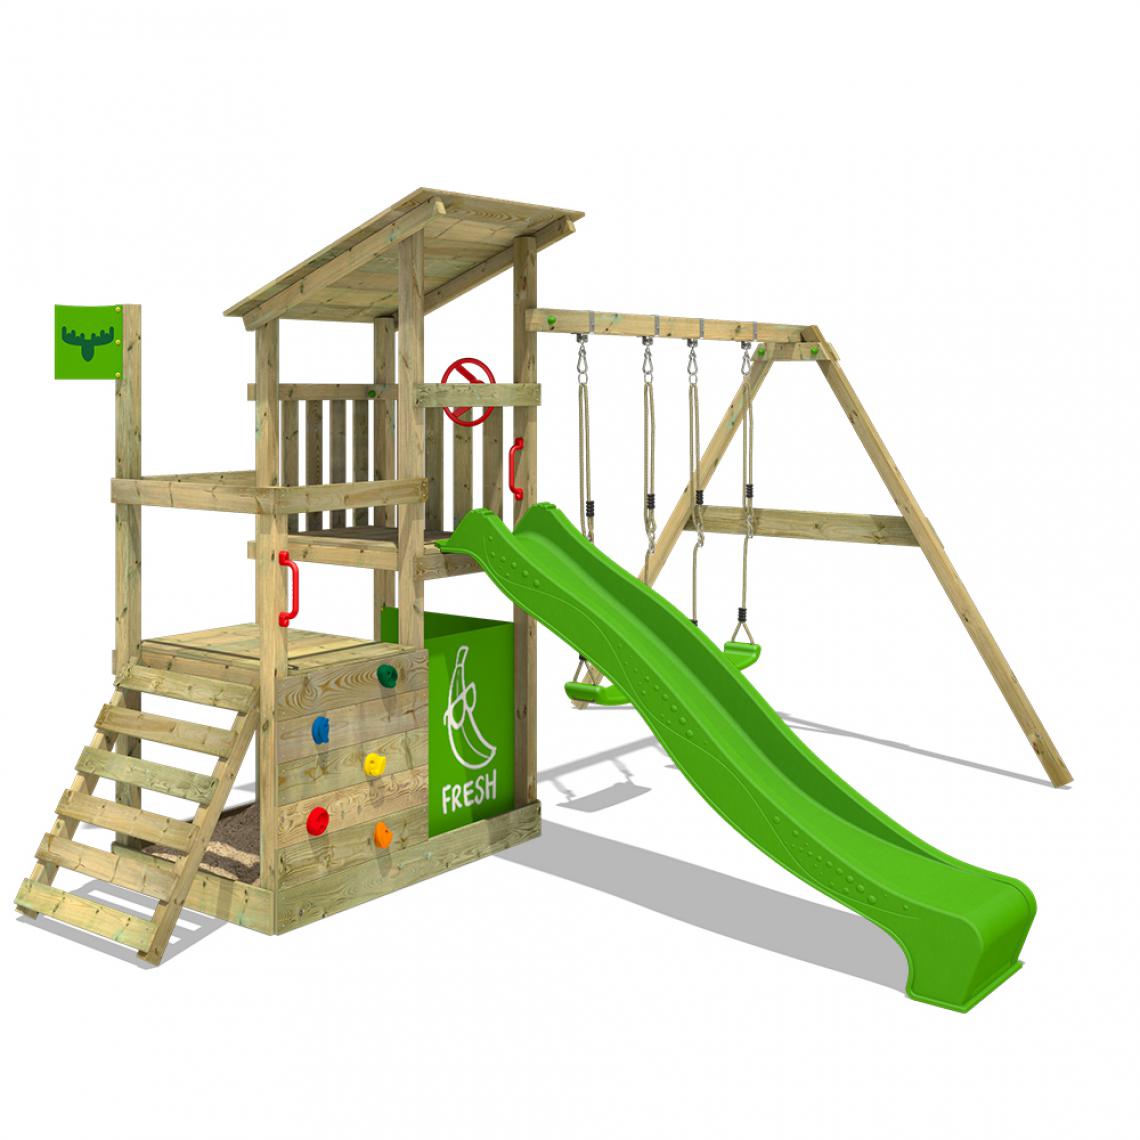 Fatmoose - Aire de jeux Portique bois FruityForest avec balançoire et toboggan vert pomme Maison enfant extérieure avec bac à sable, échelle d'escalade & accessoires de jeux - Aire de jeux